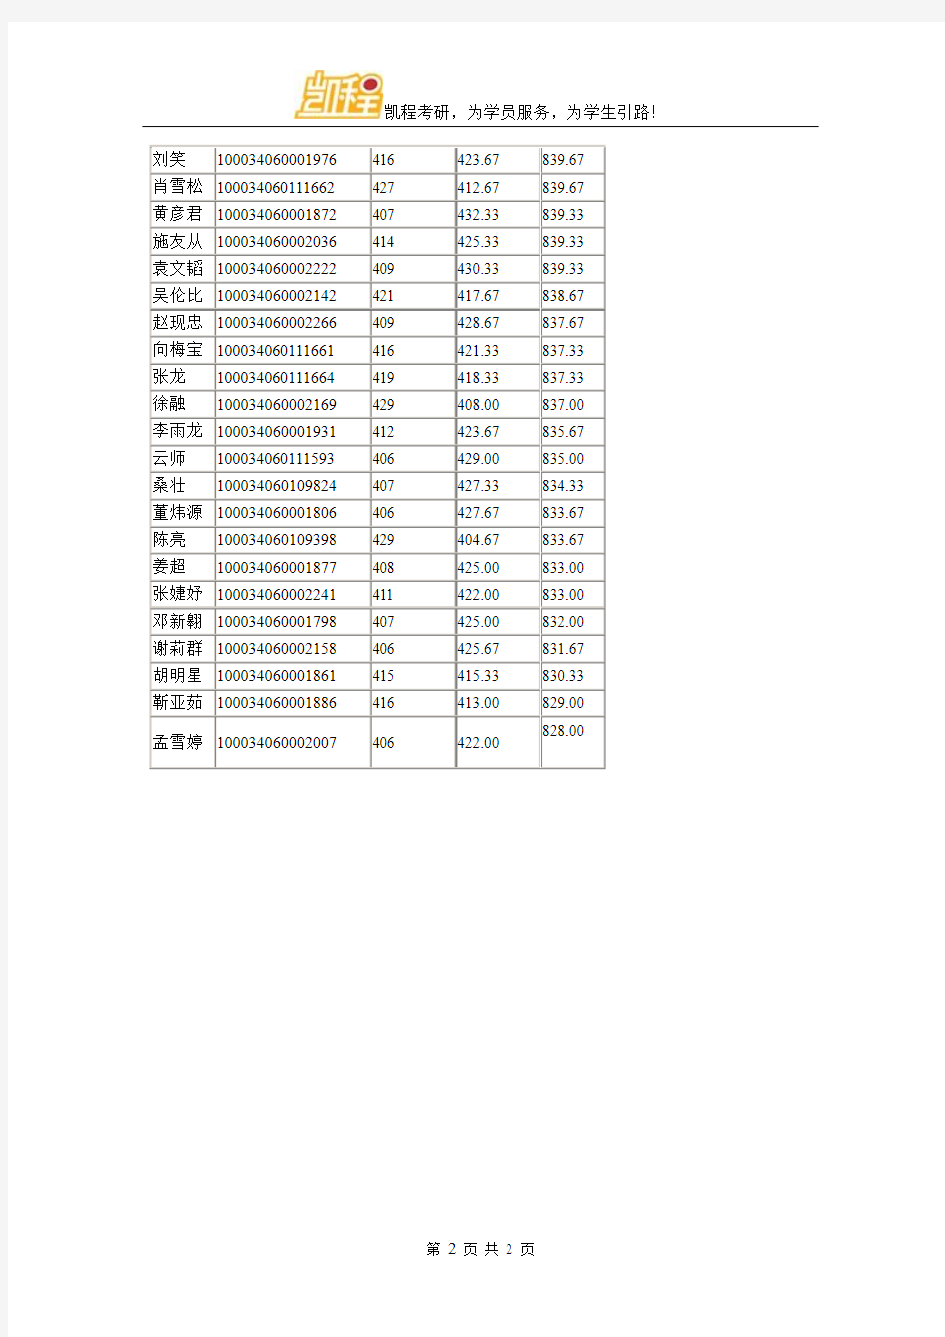 2014年清华大学五道口金融学院金融专业硕士拟录取名单公示